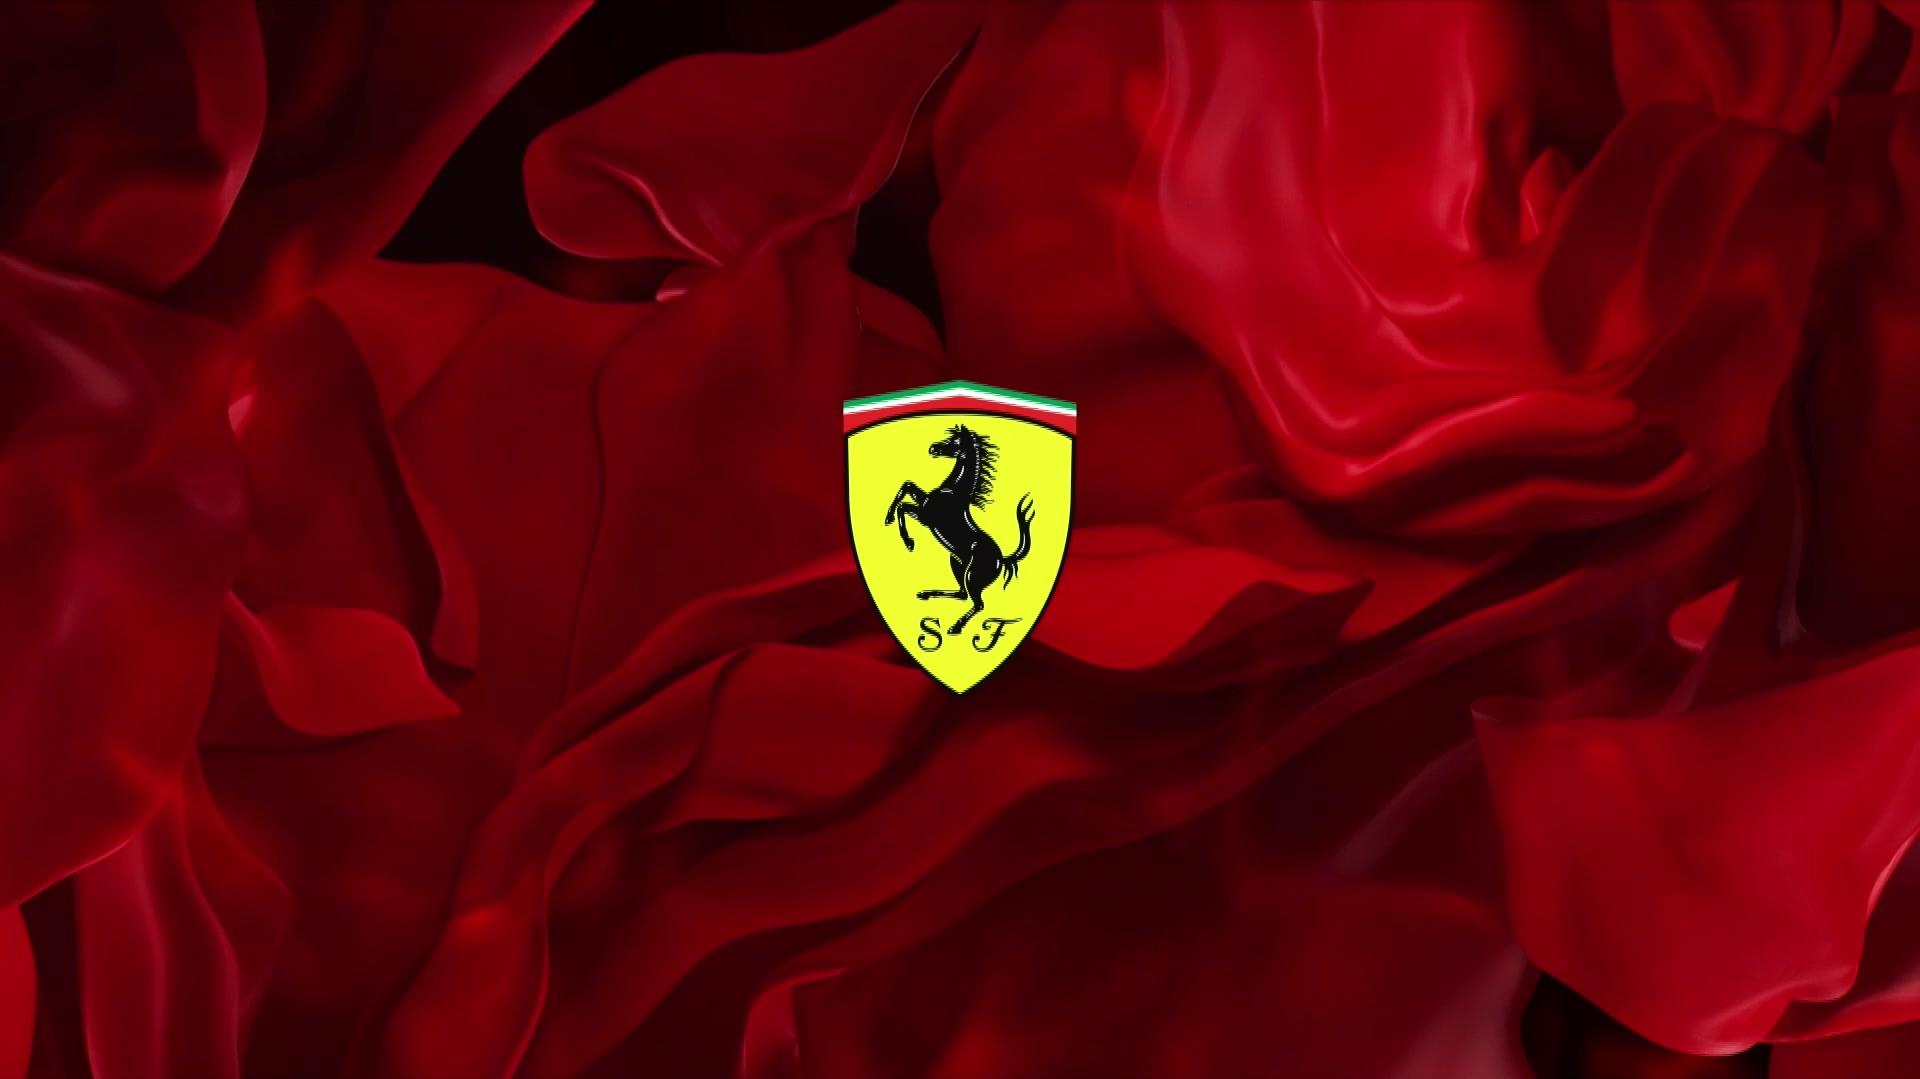 Introducing The Scuderia Ferrari Sf S P A Formula